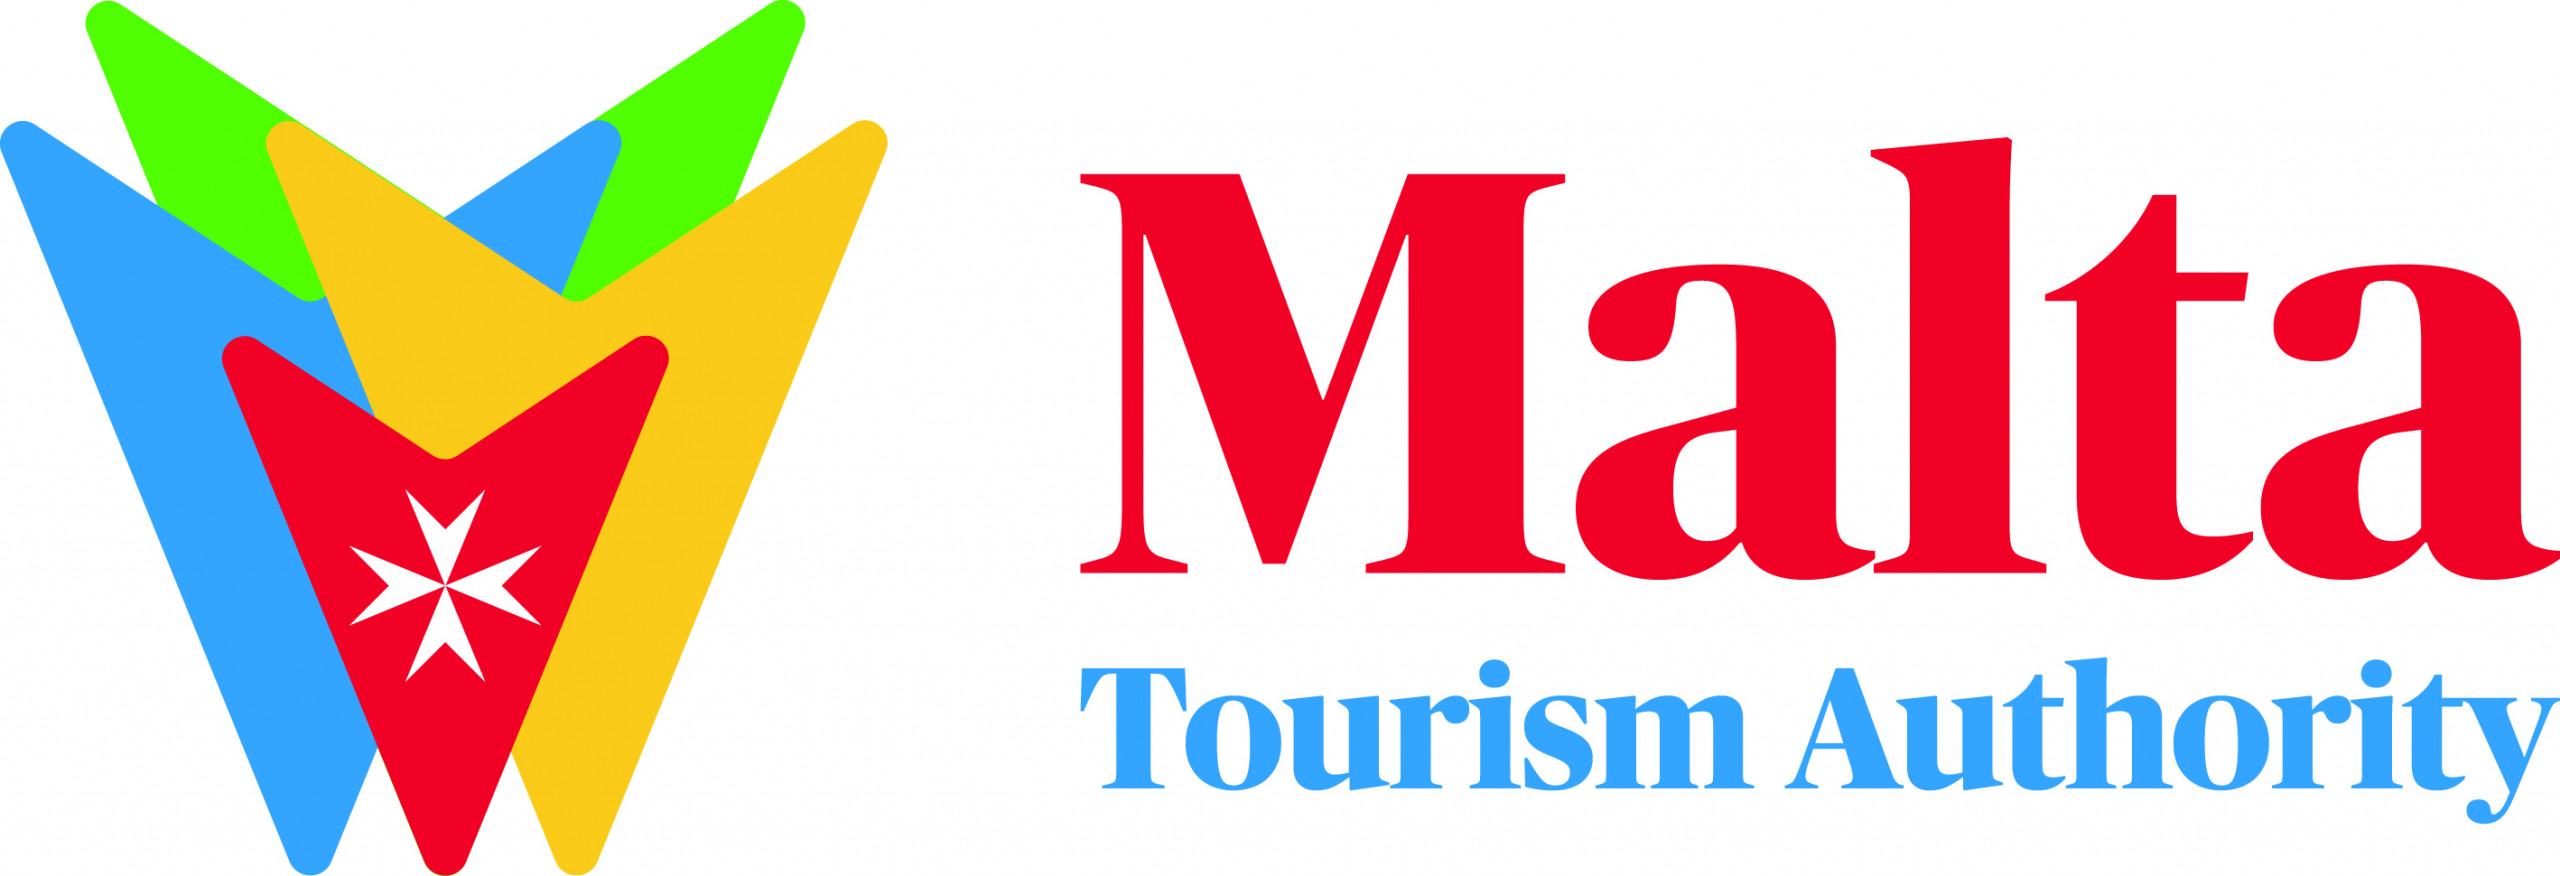 Malta_Tourism Authority